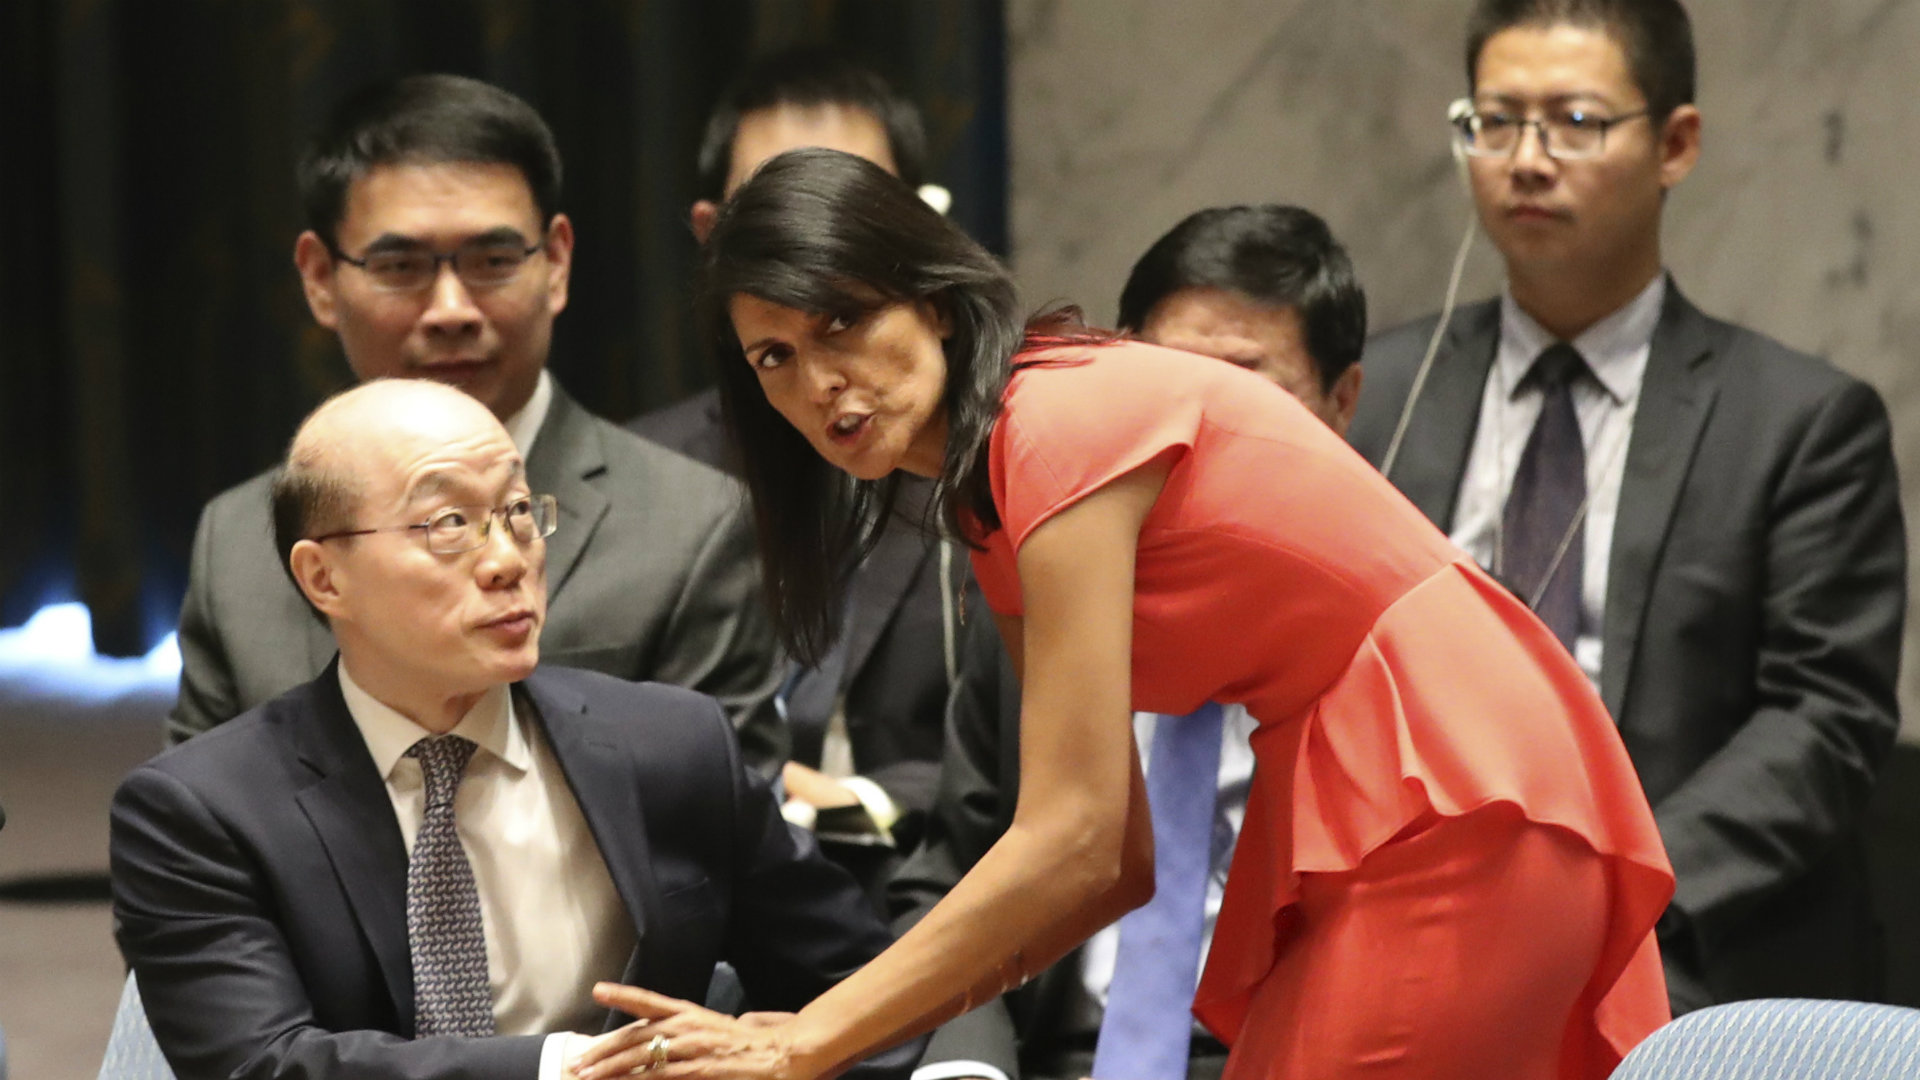 EEUU presiona en la ONU para aplicar nuevas sanciones a Corea del Norte